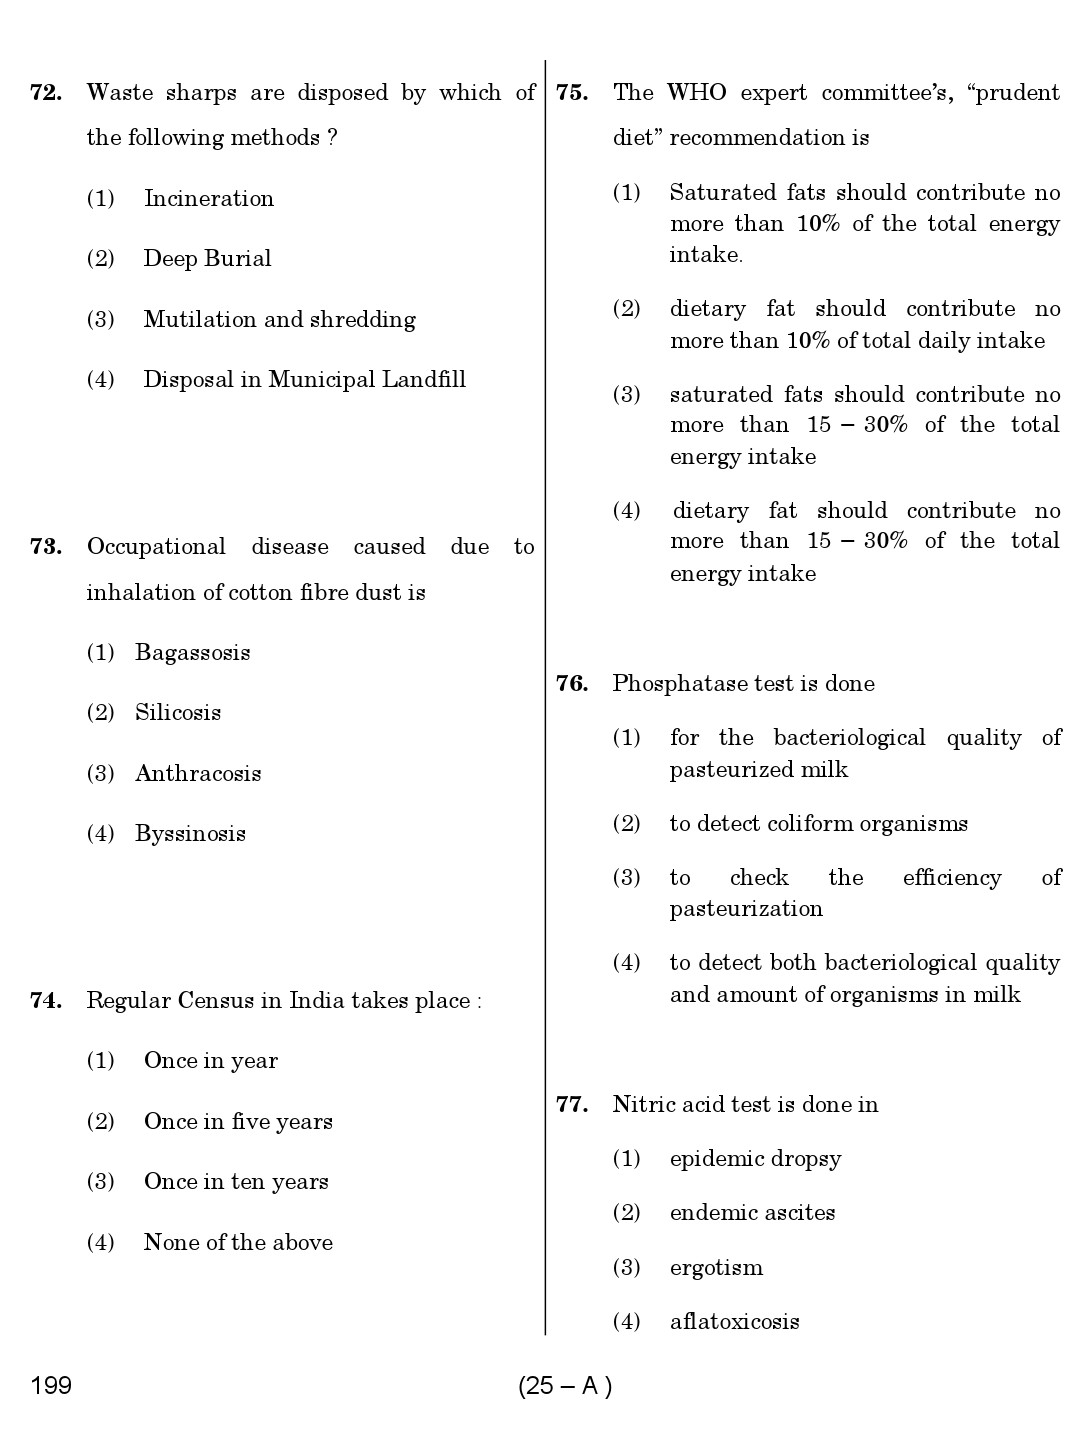 Karnataka PSC Junior Health Inspector Exam Sample Question Paper 25